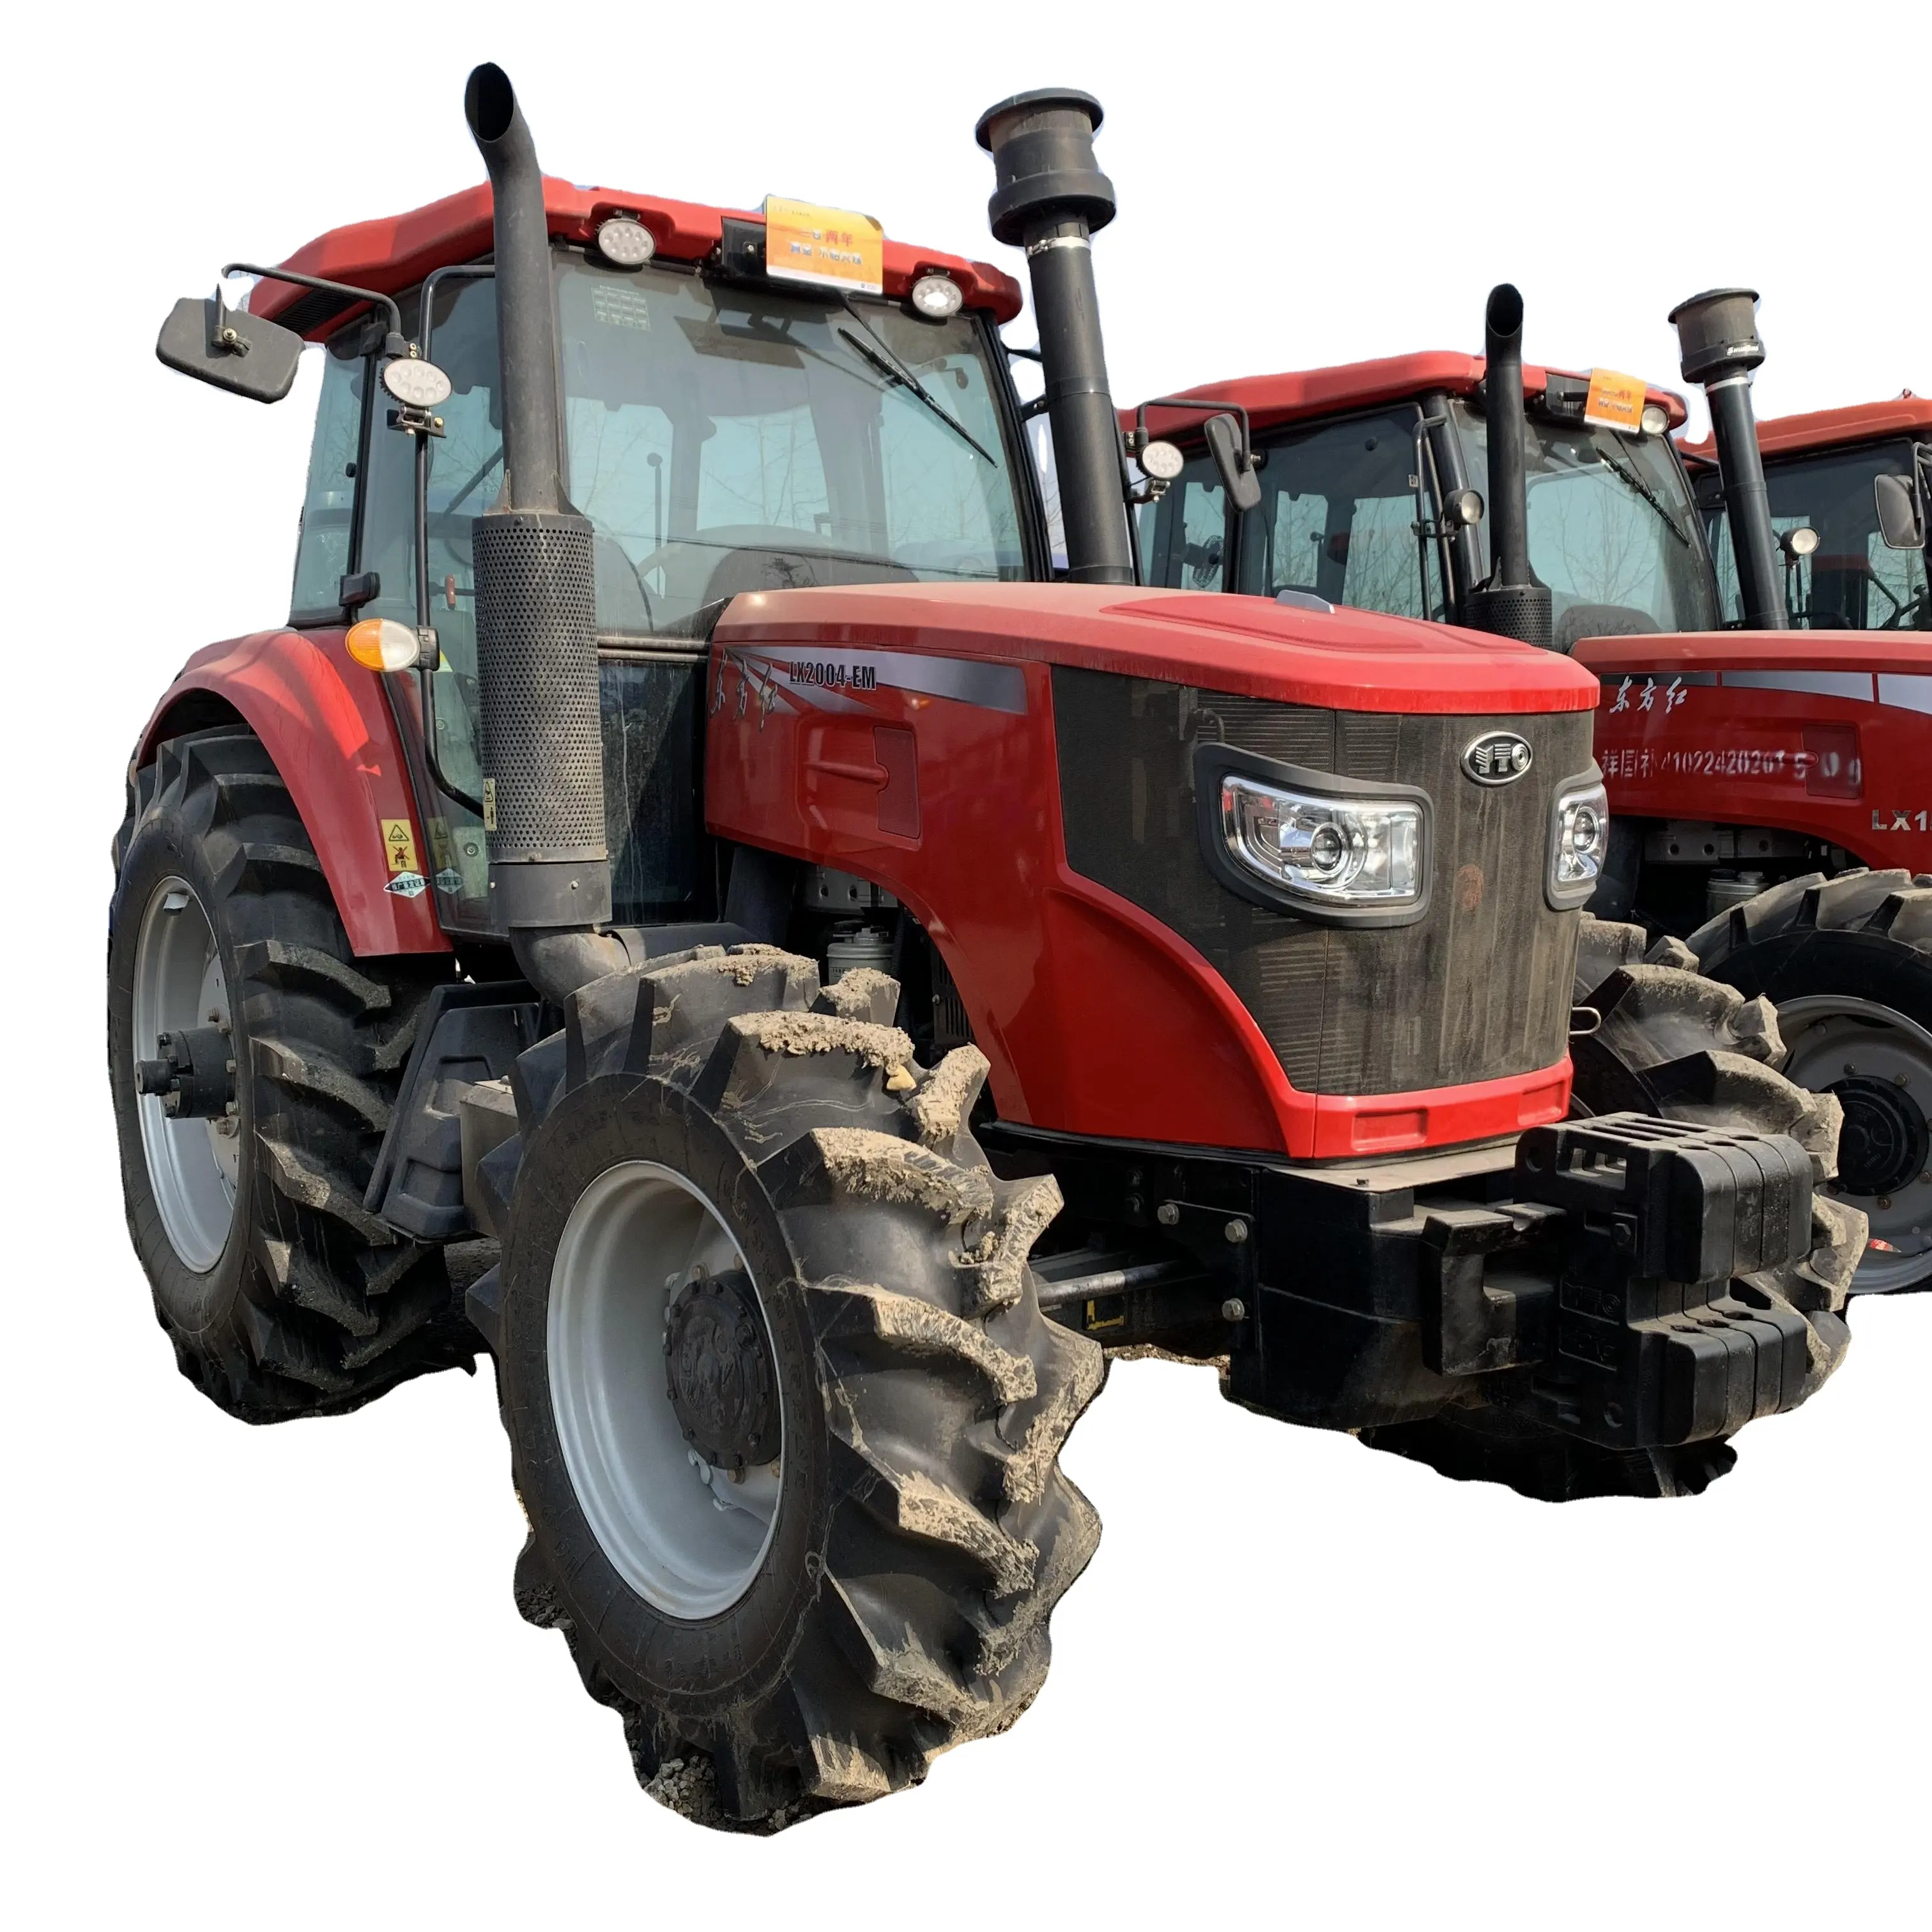 Foton lovol traktor teile agricolas usados de 70 hp zubehör ackers chlepper